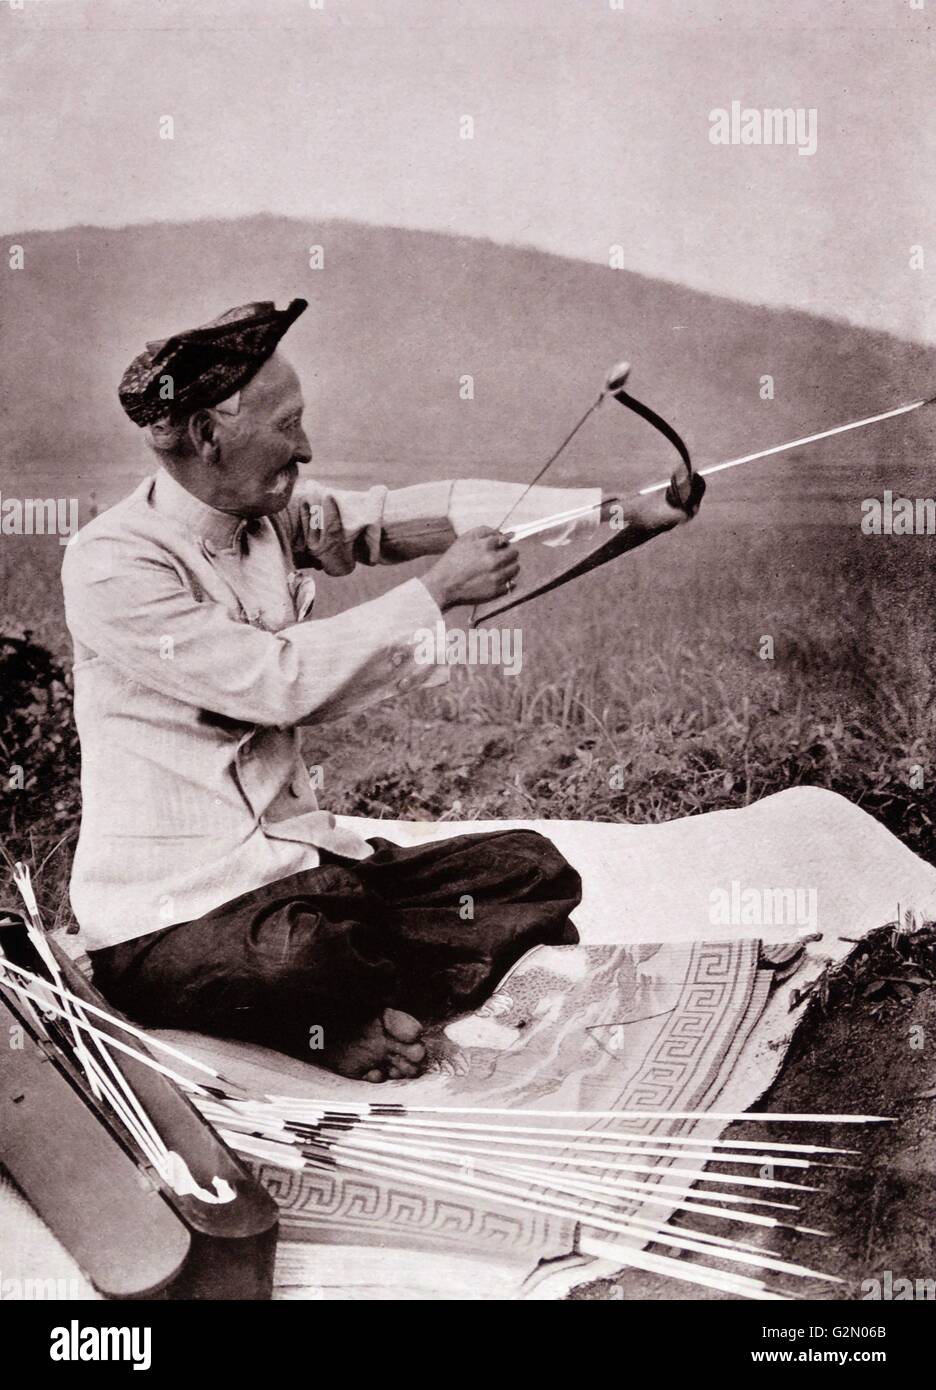 La fotografia mostra un vecchio maschio di test di un arco e frecce in un campo. Le Indie orientali olandesi, noto come Indonesia moderna. Datata c1935. Foto Stock